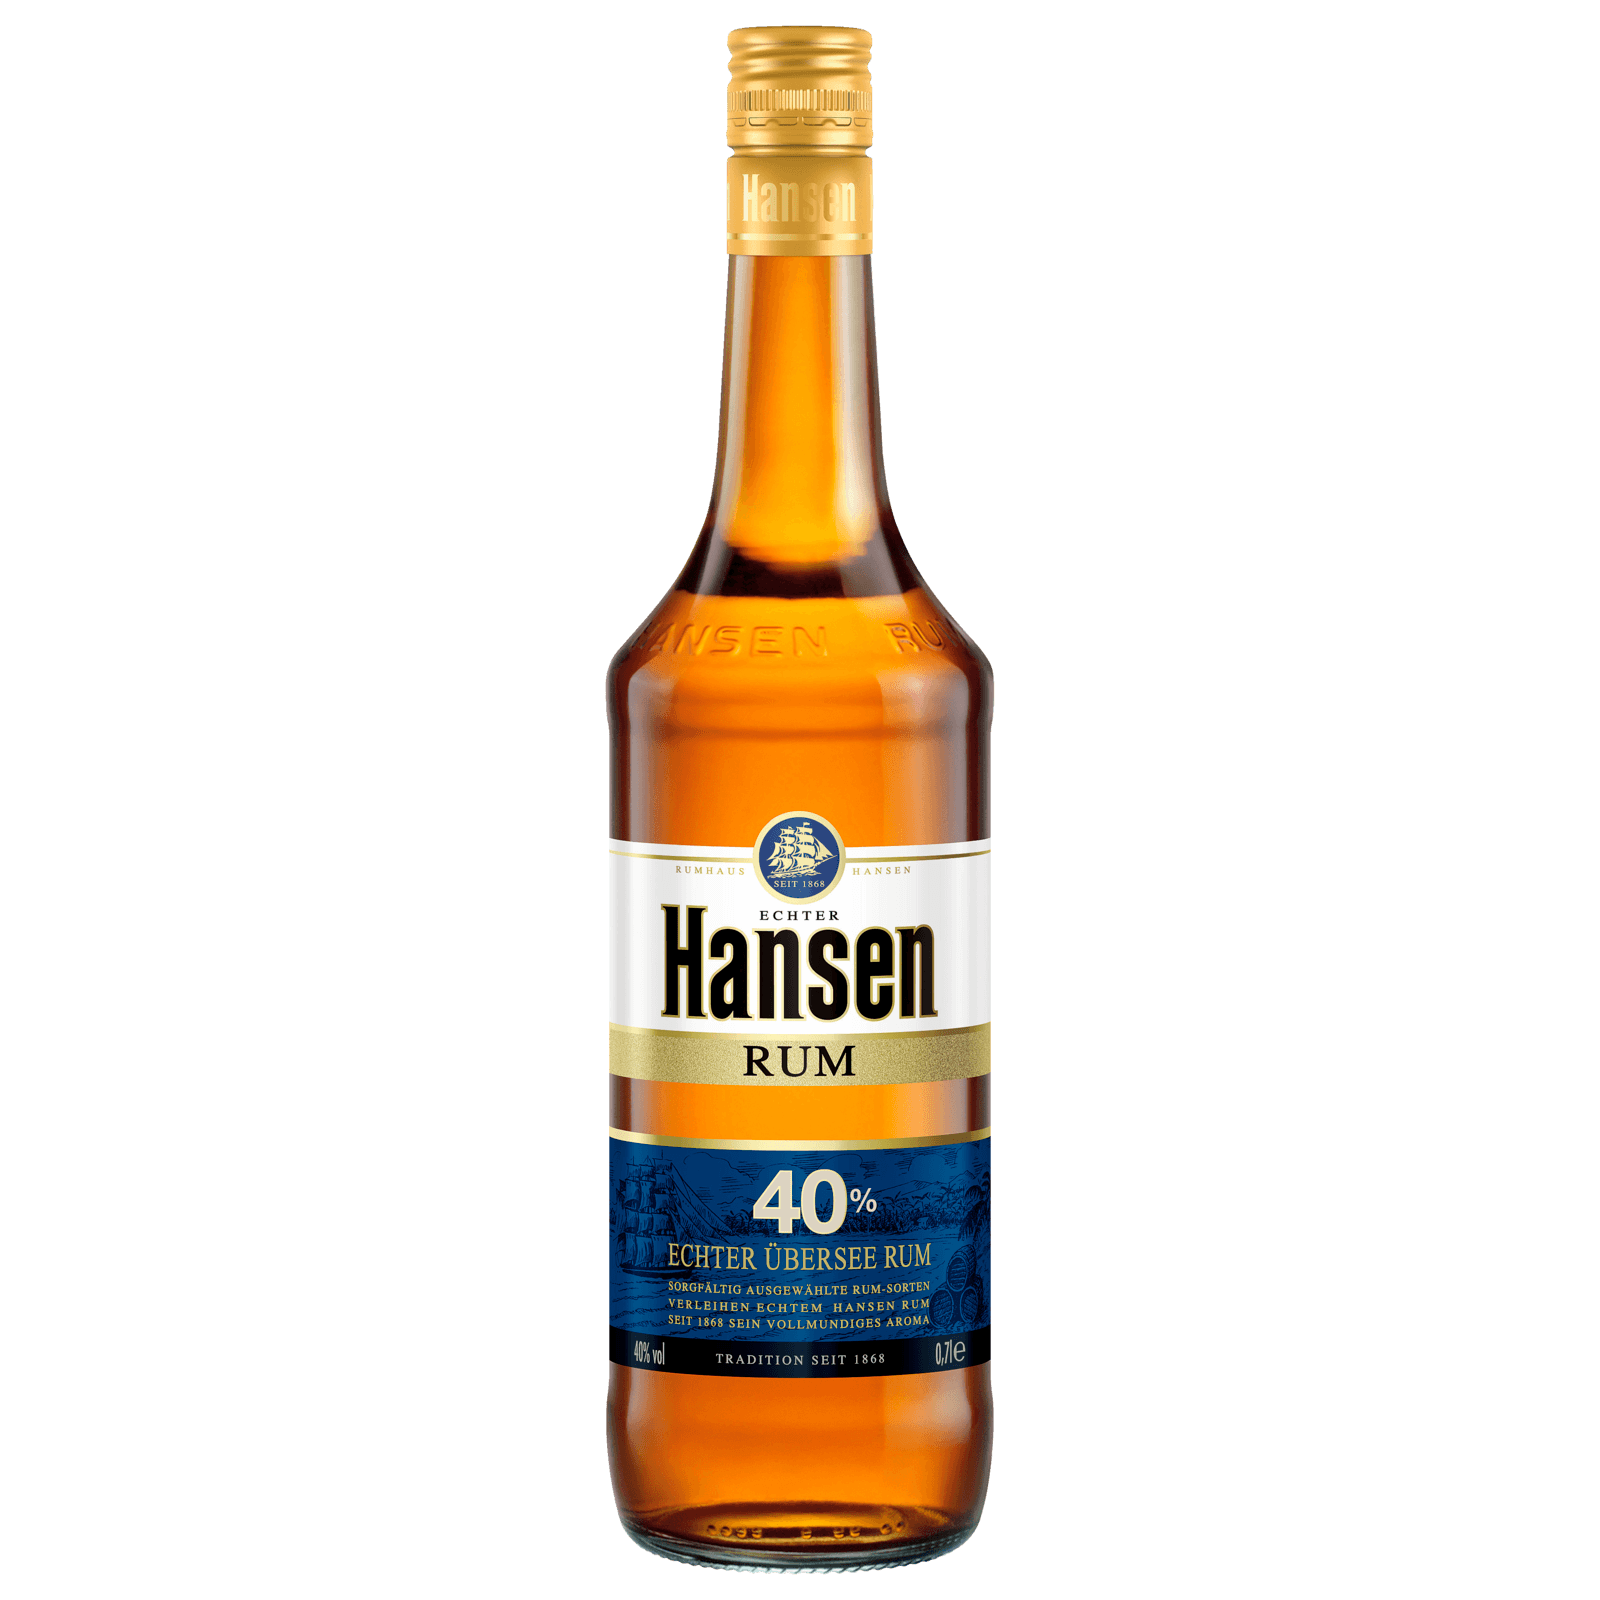 Hansen Rum 0 7l Bei Rewe Online Bestellen Rewe De